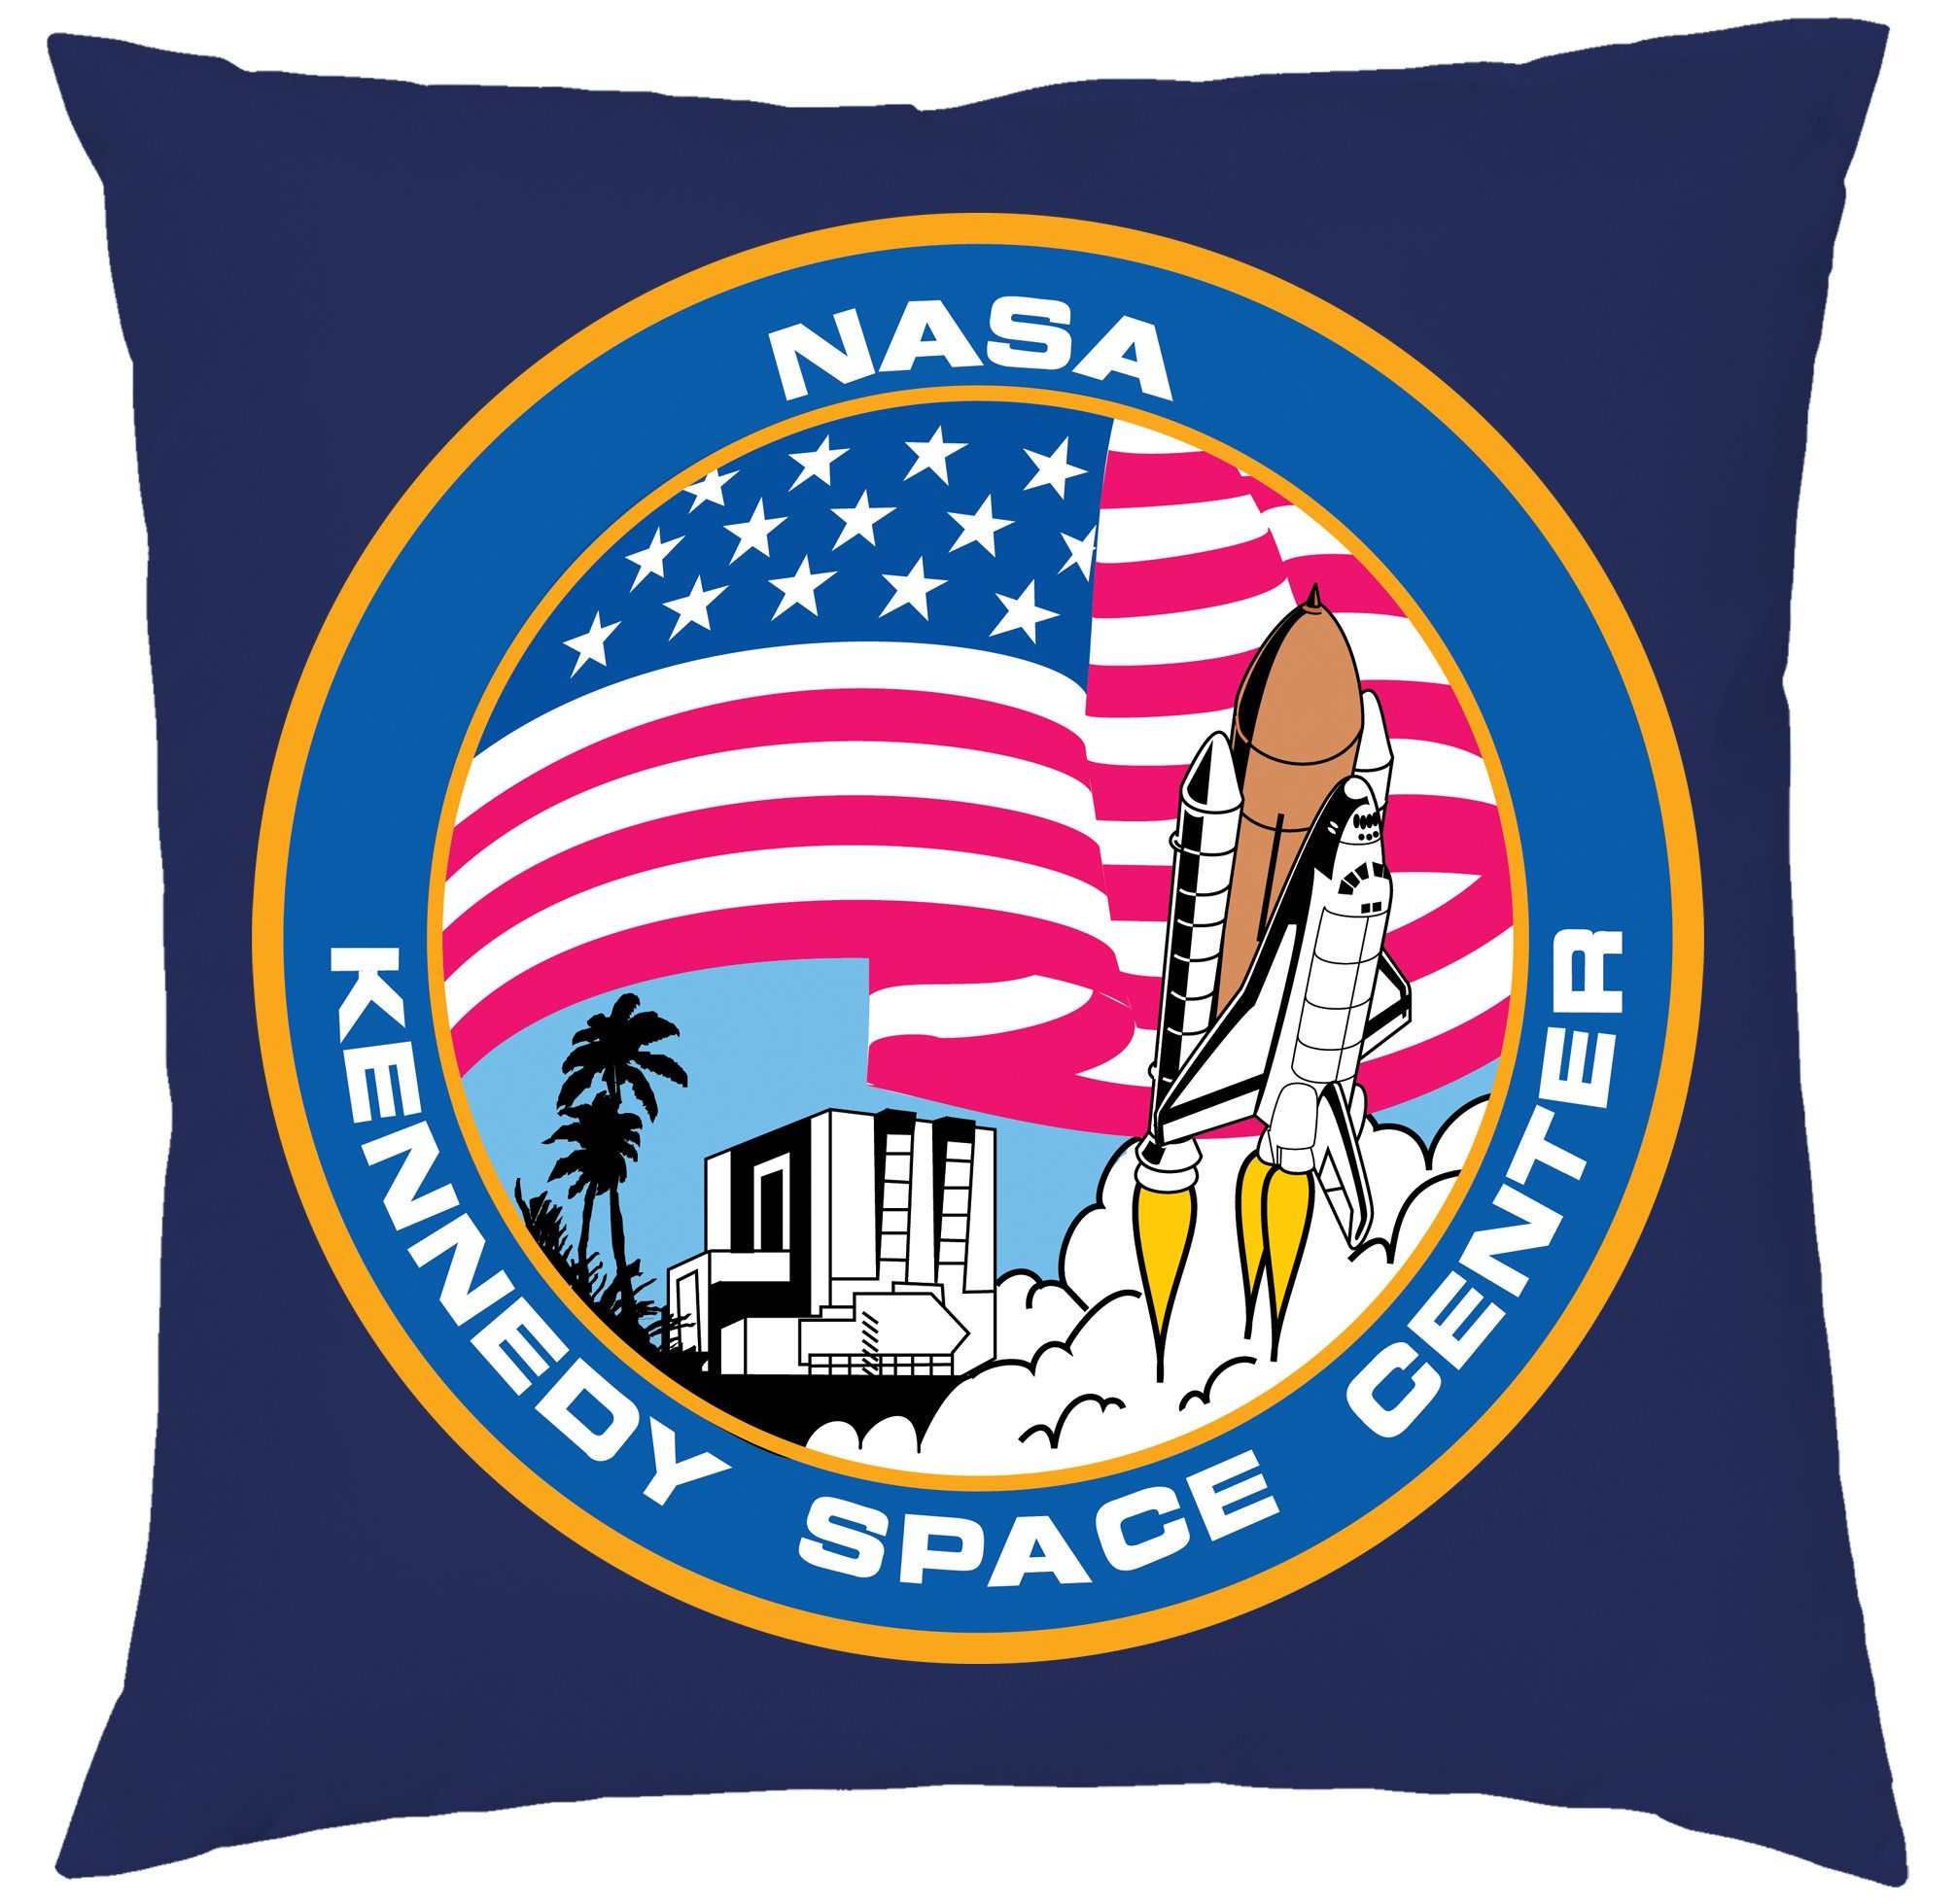 Blondie & Brownie Dekokissen NASA Kennedy Space Center Mission Elon Mars Mond, Kissen mit Füllung Navyblau